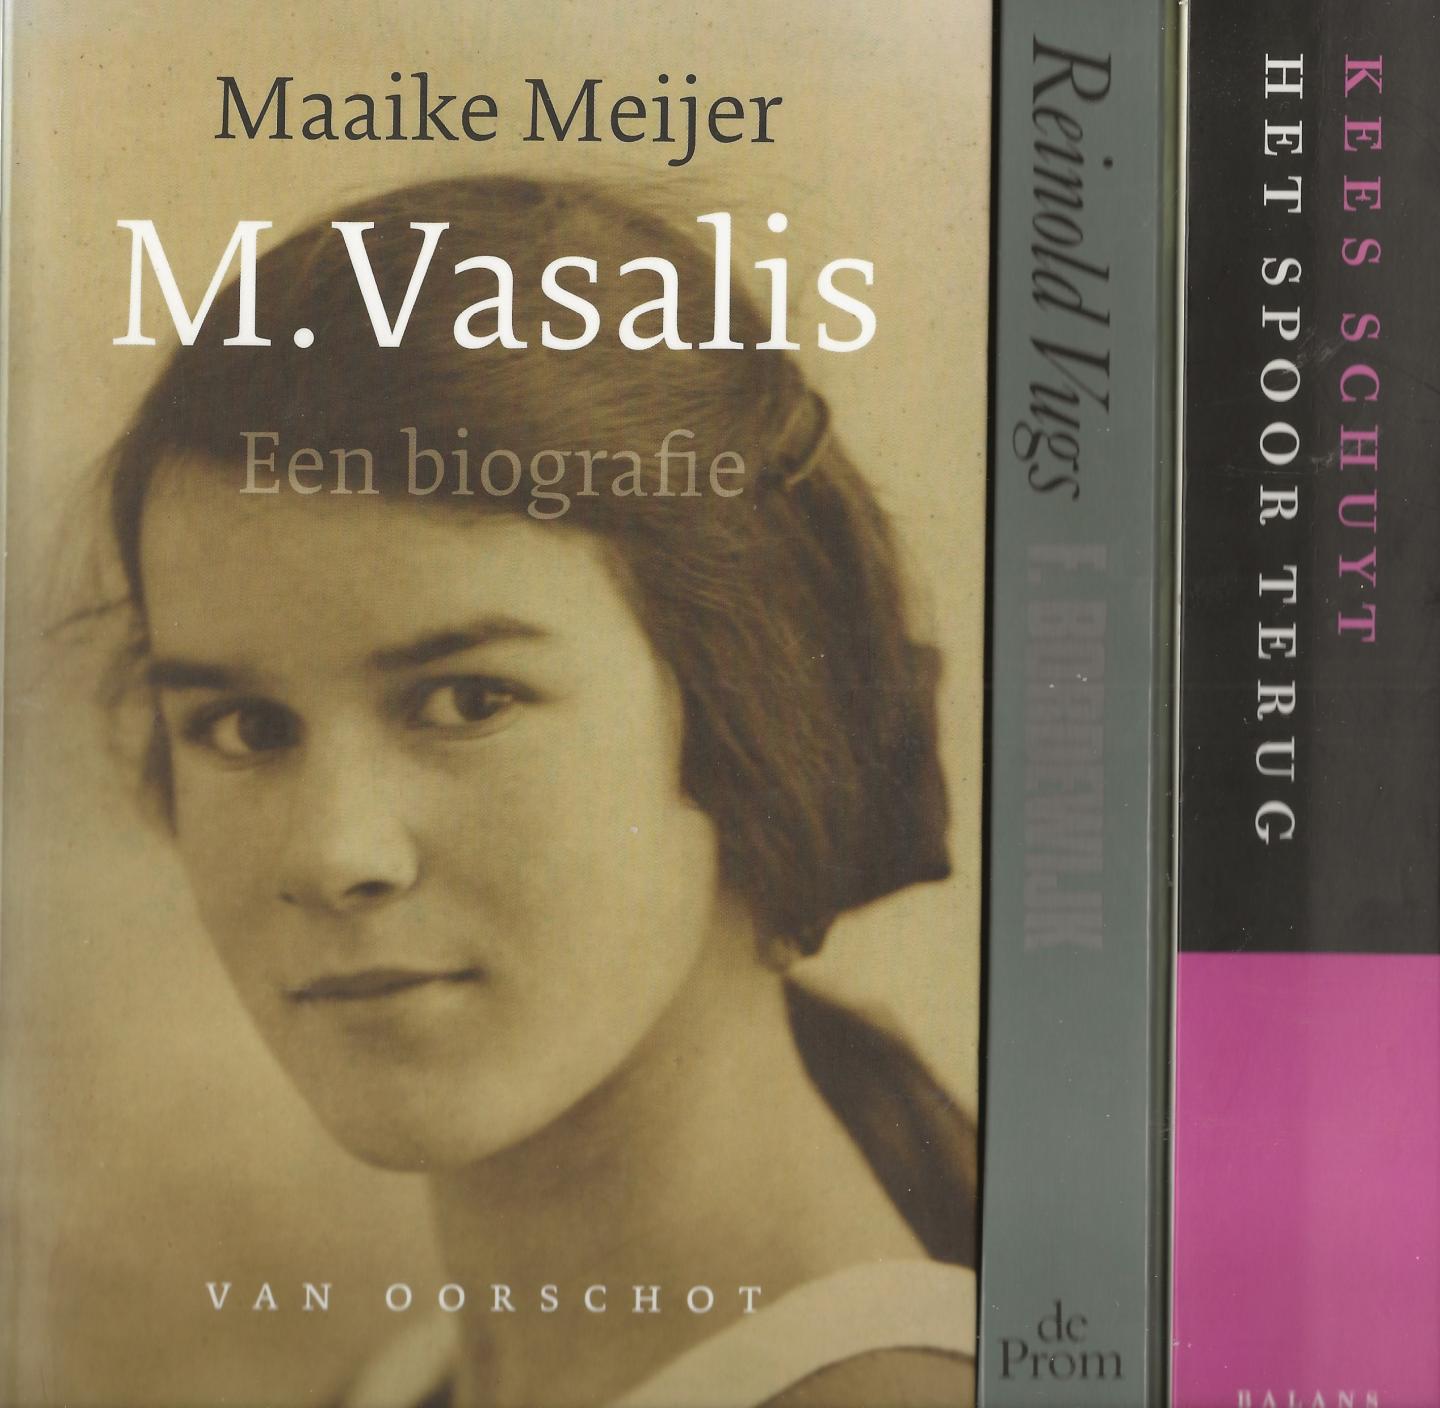 Meijer, Maaike, Kees Schuyt, Reinold Vugs - M.Vasalis biografie, Het spoor terug J.B.Charles-W.H. Nagel, F. Bordewijk biografie